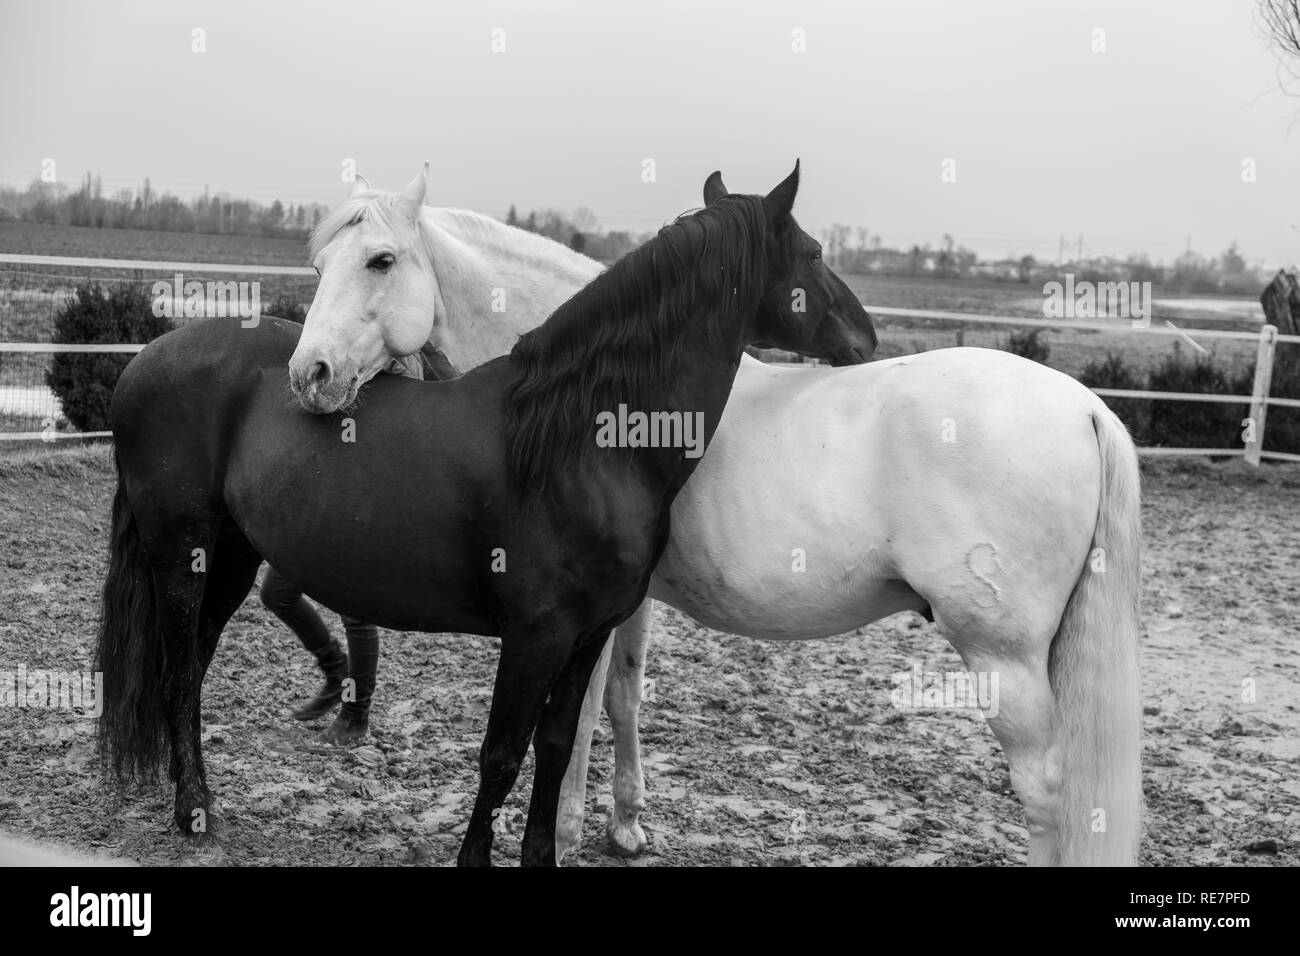 Deux chevaux, un blanc et un noir, jouer, manger et avoir du plaisir ensemble. Chevaux de couleurs différentes dans la nature. Banque D'Images